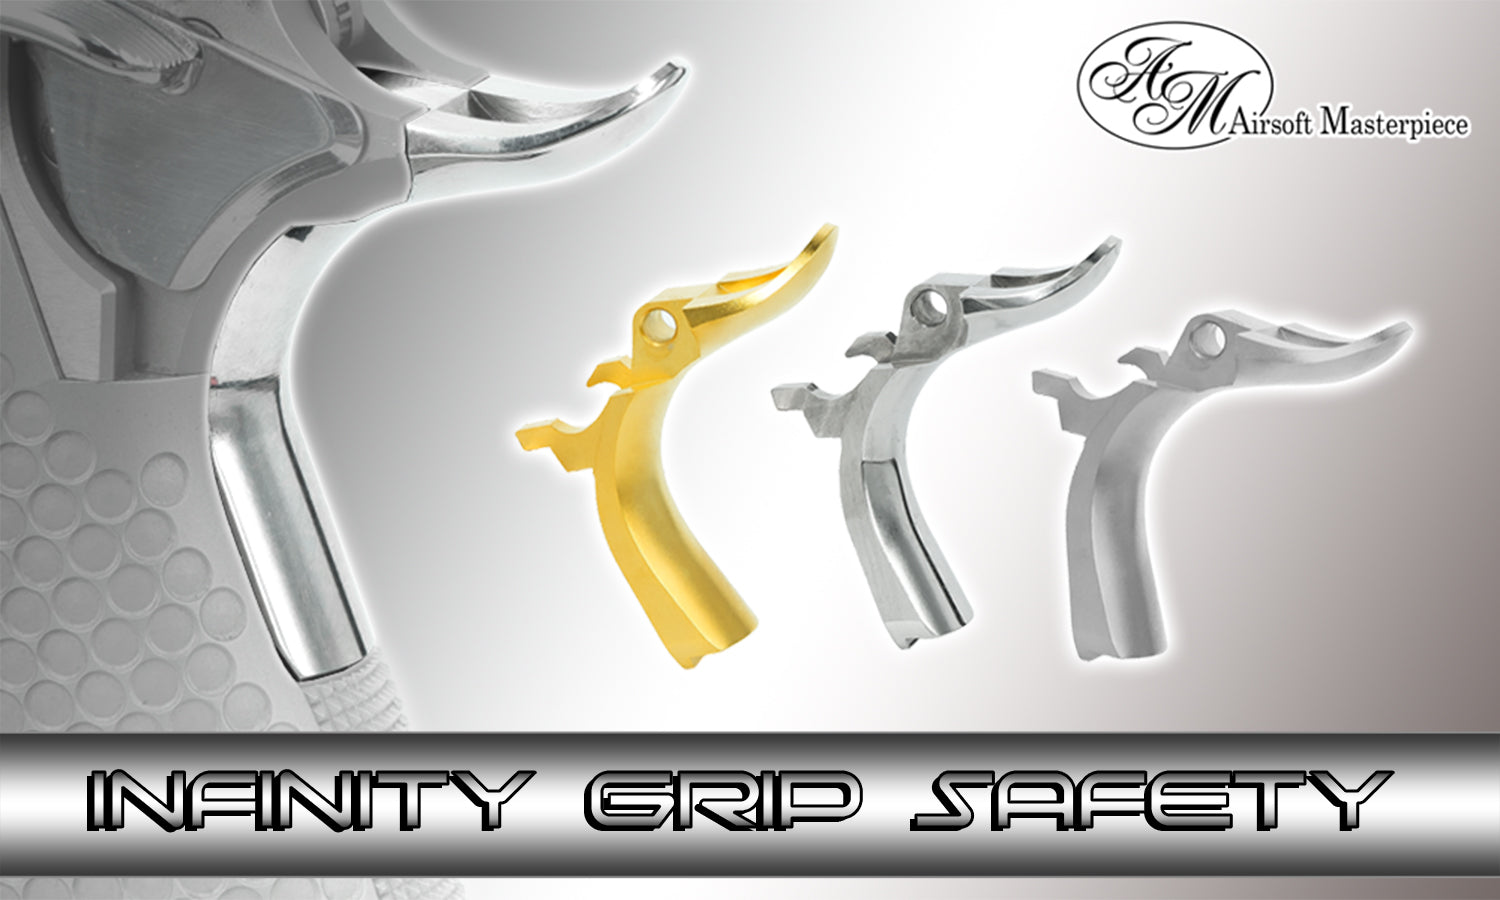 Airsoft Masterpiece Steel Grip Safety - INFINITY Signature (Matt Sliver)